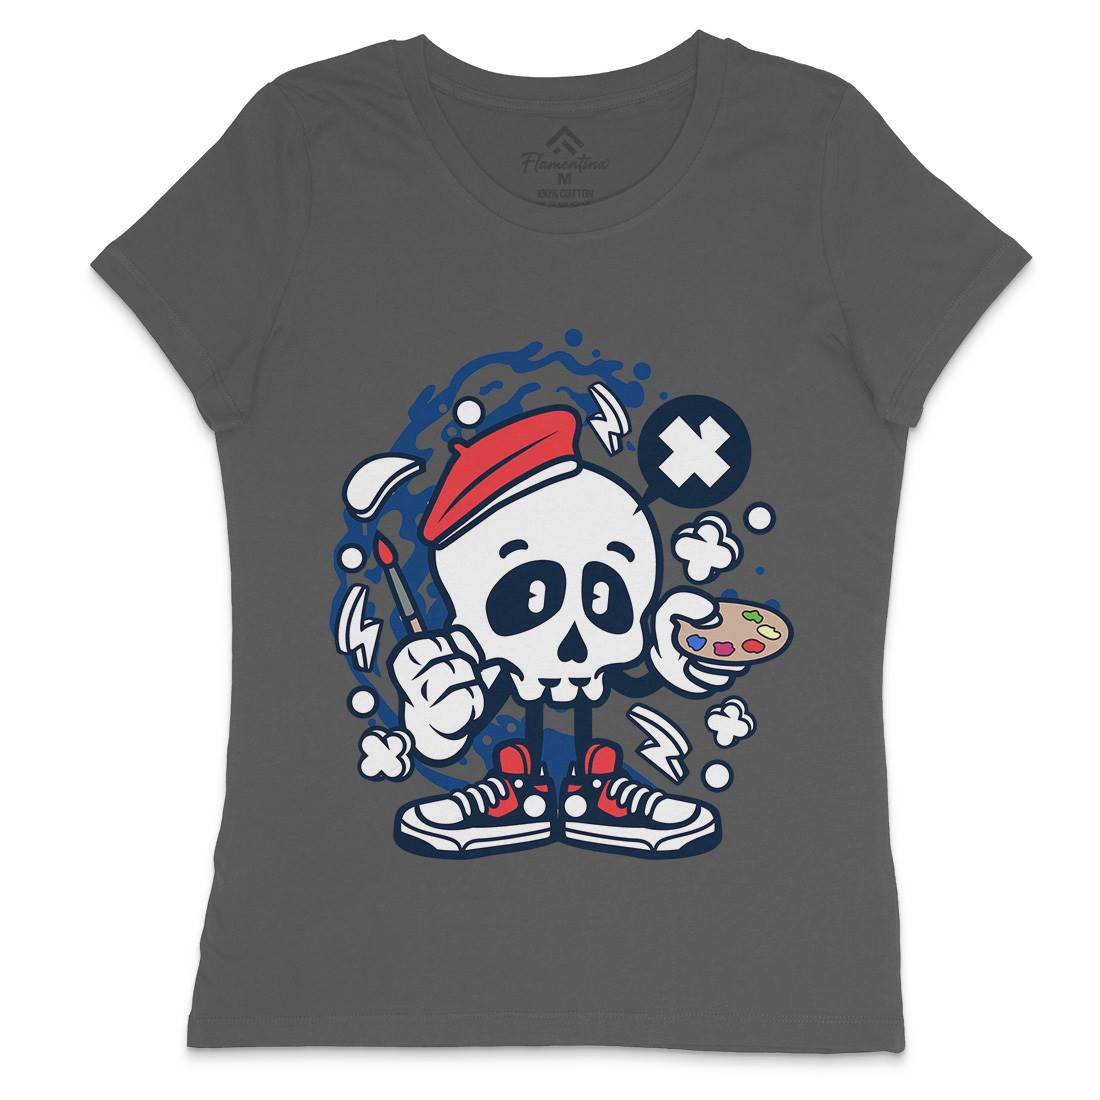 Painter Skull Womens Crew Neck T-Shirt Retro C183